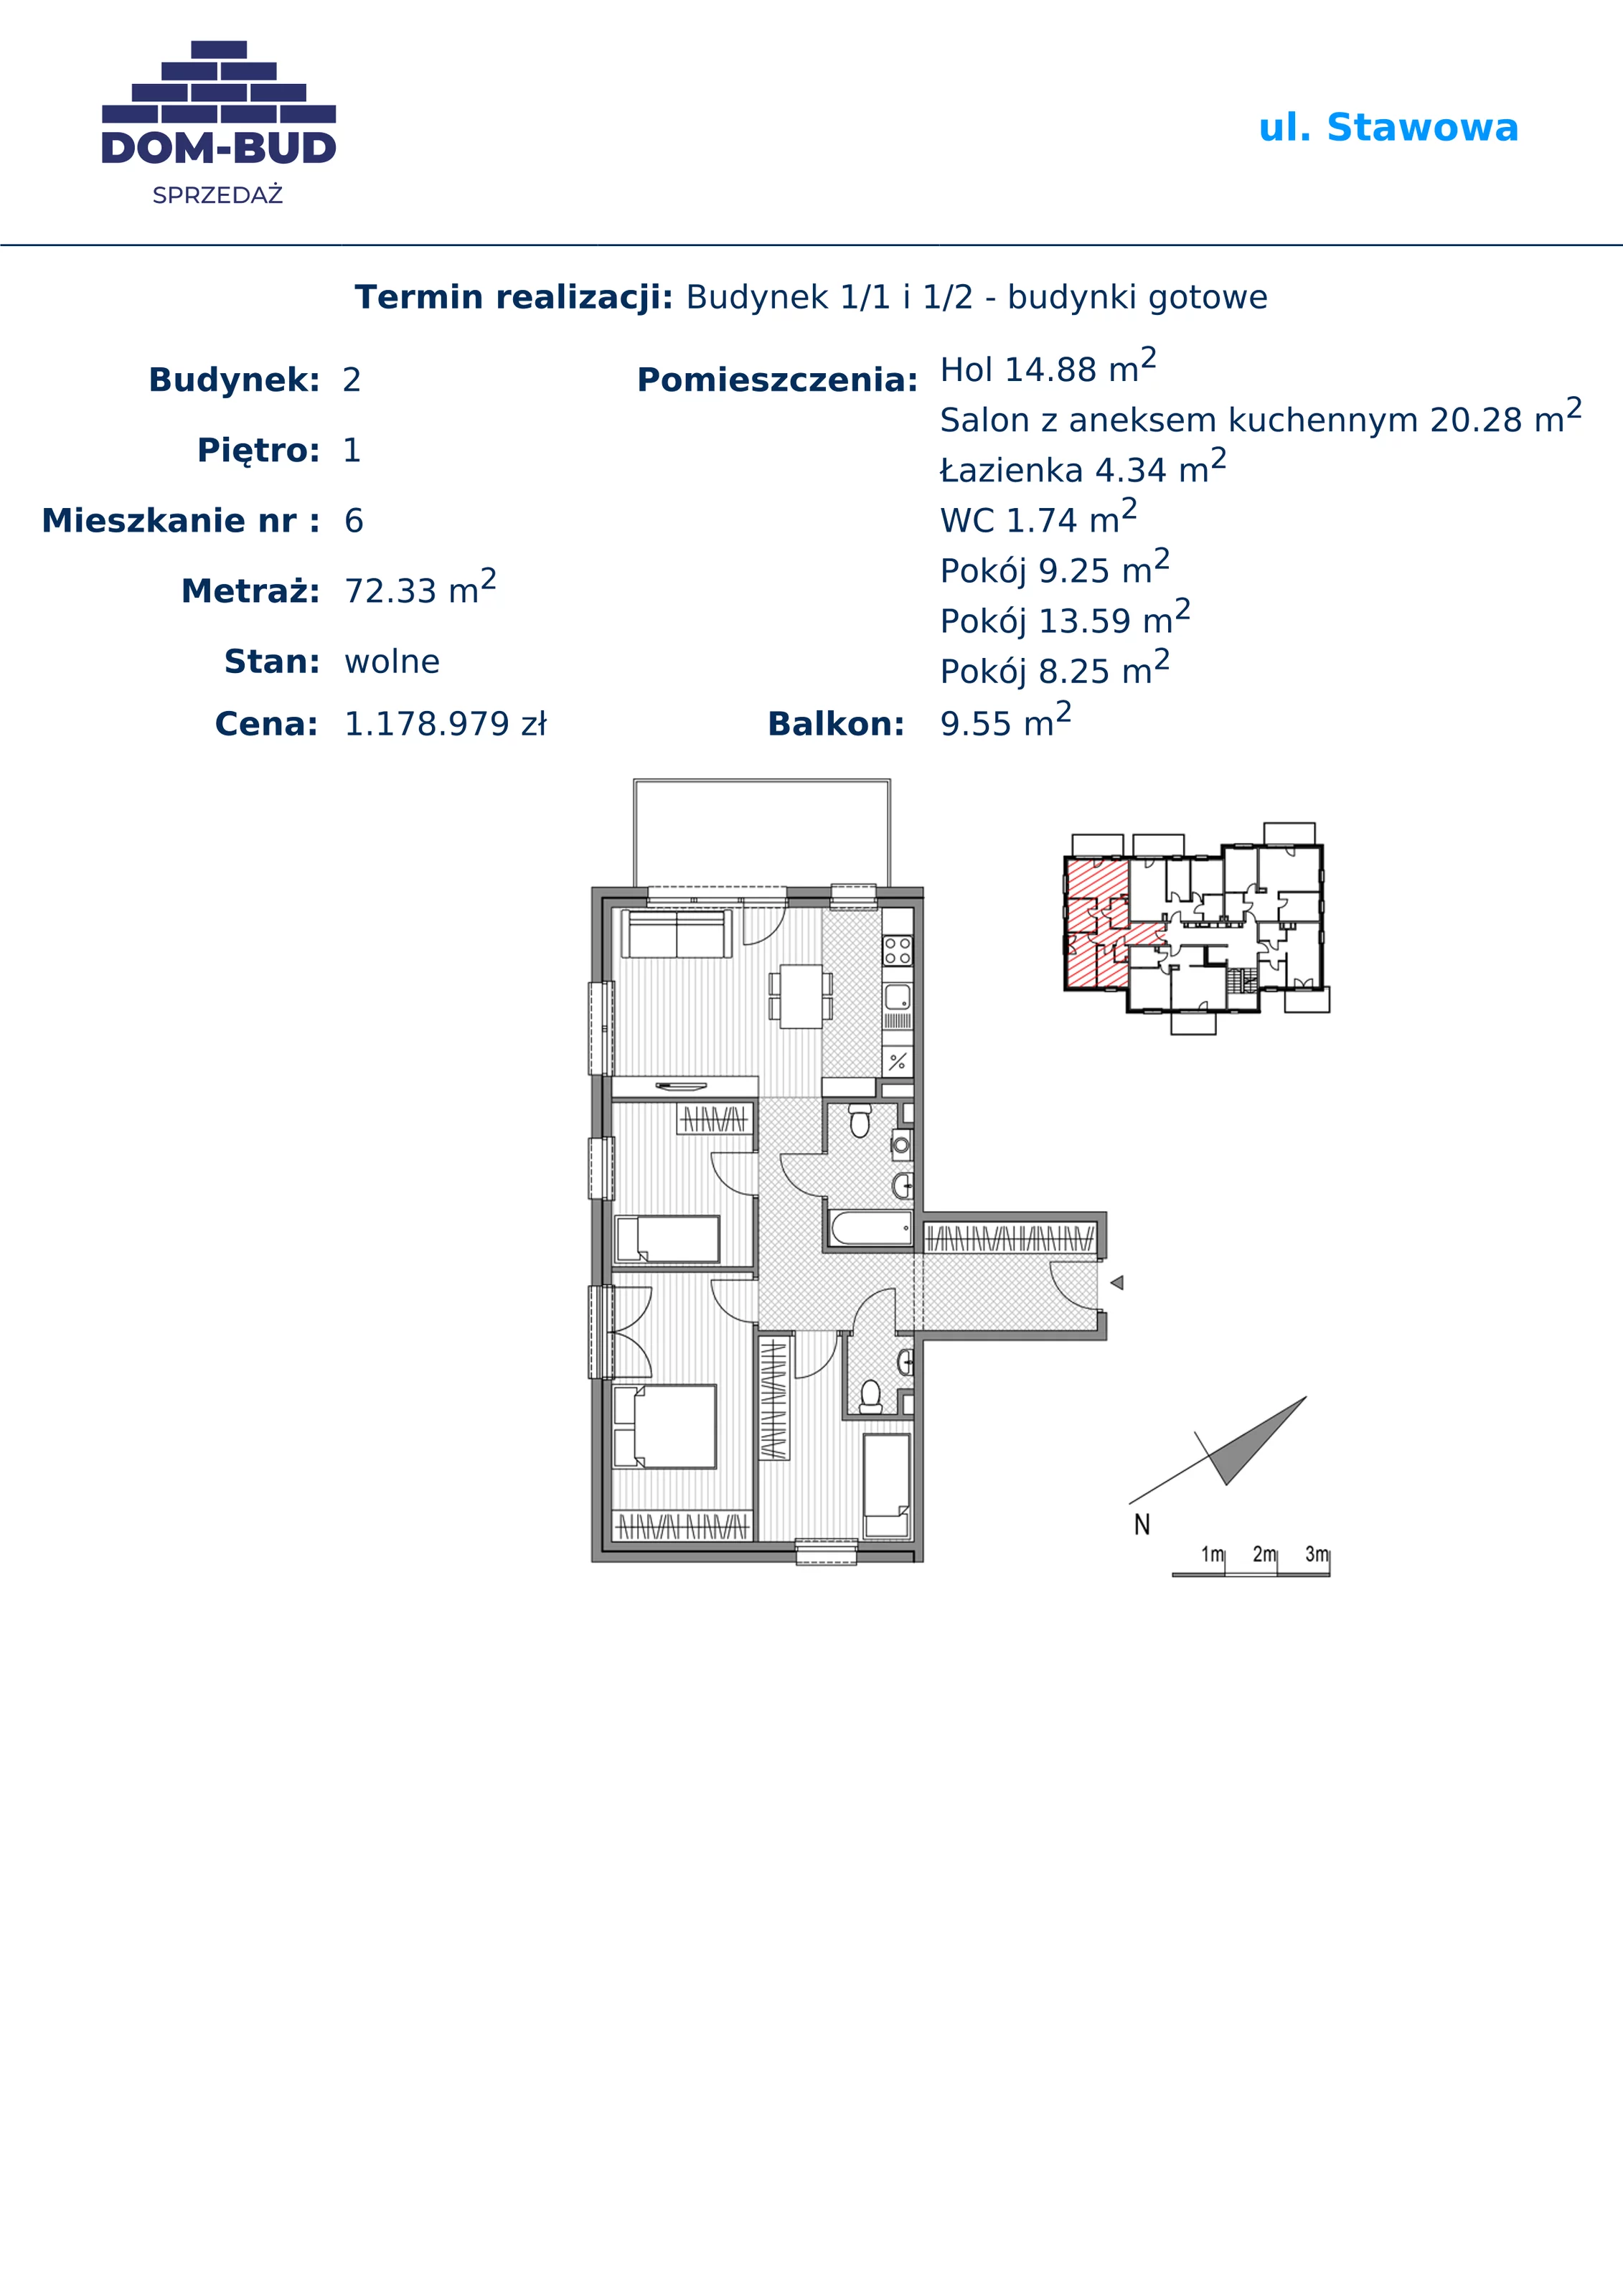 Mieszkanie 72,33 m², piętro 1, oferta nr 1/2-6, ul. Stawowa, Kraków, Prądnik Biały, Bronowice Wielkie, ul. Stawowa 242